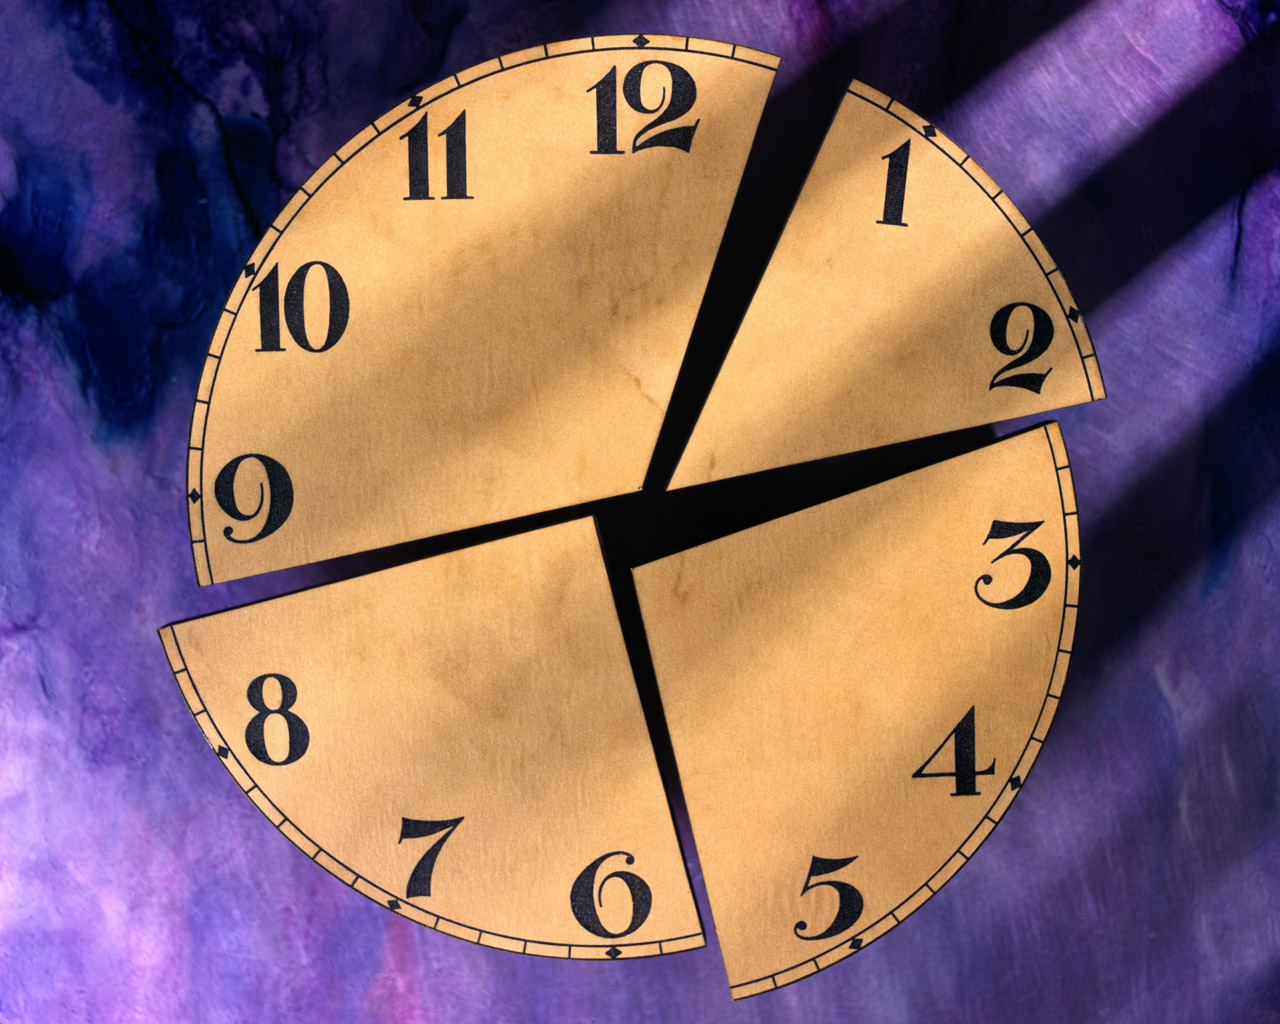 鐘錶作息時間表畫圖,畫鐘錶的形式記錄一天,二年級作息時間表_時鐘作息時間表 - 神拓網